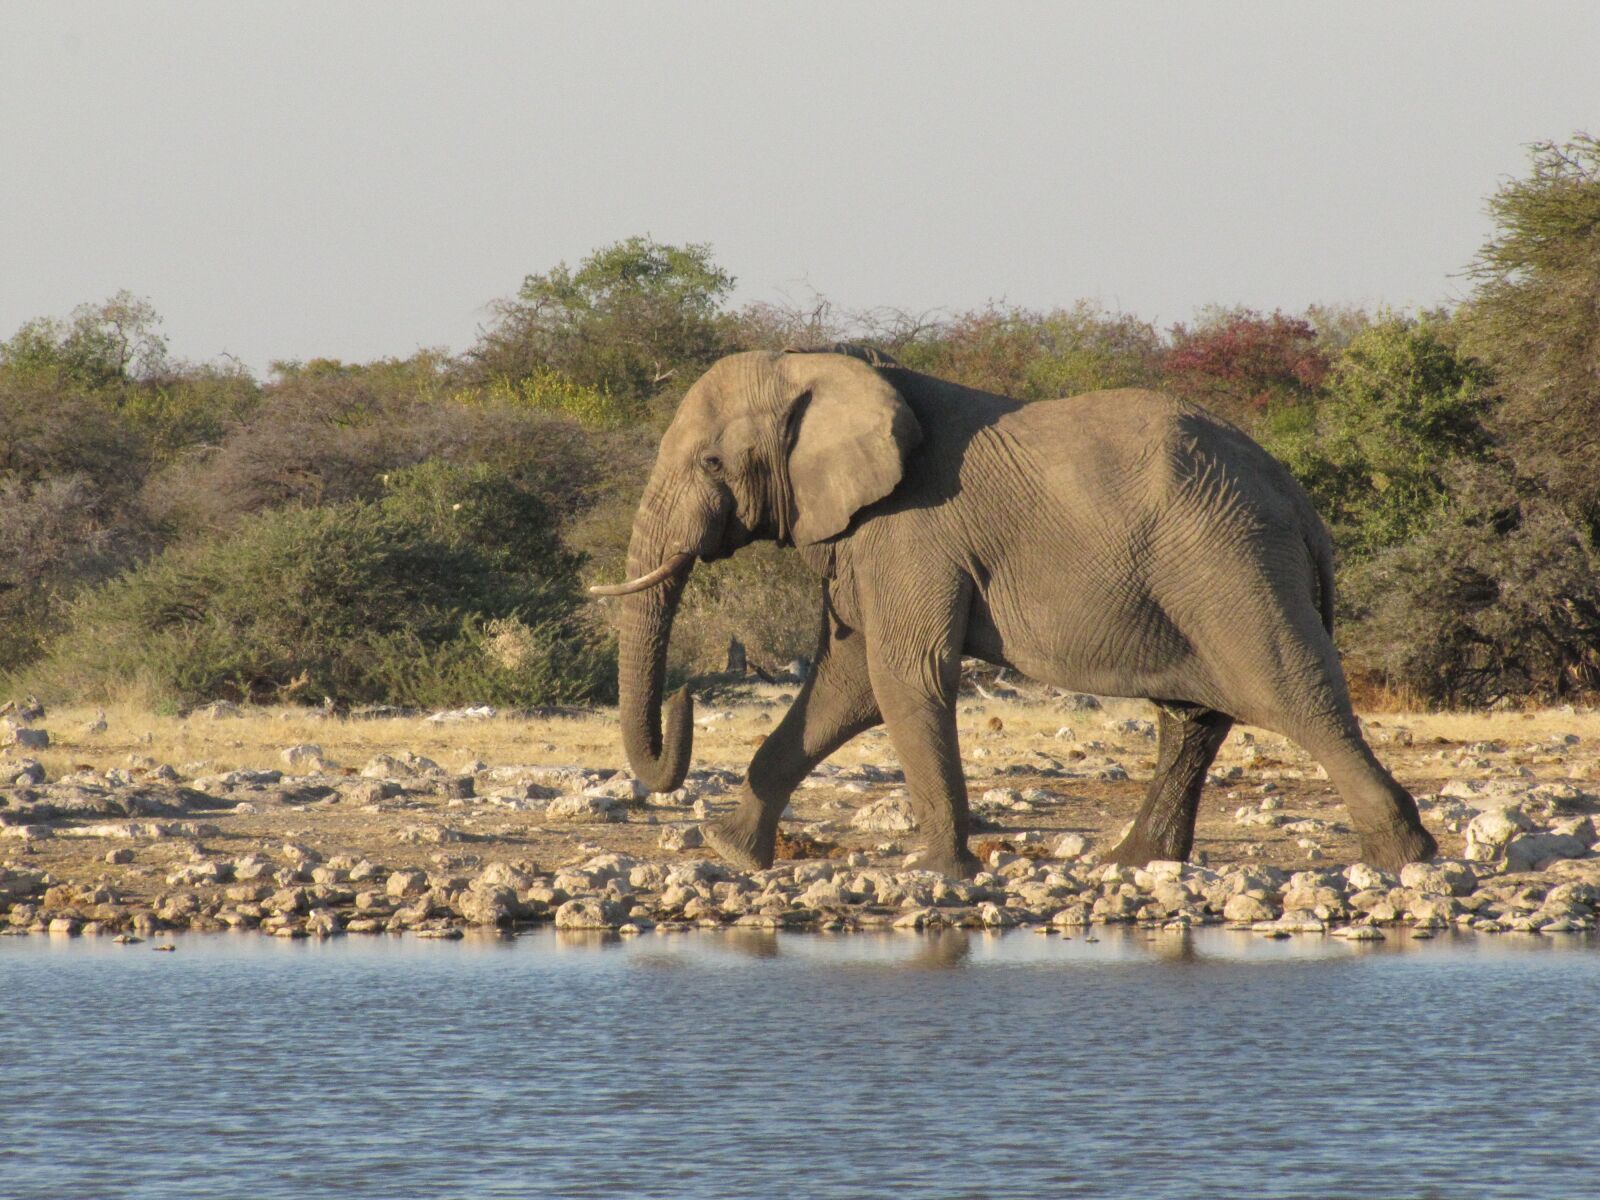 Canon PowerShot SX20 IS sample photo. Wildlife, elephant, namibia photography